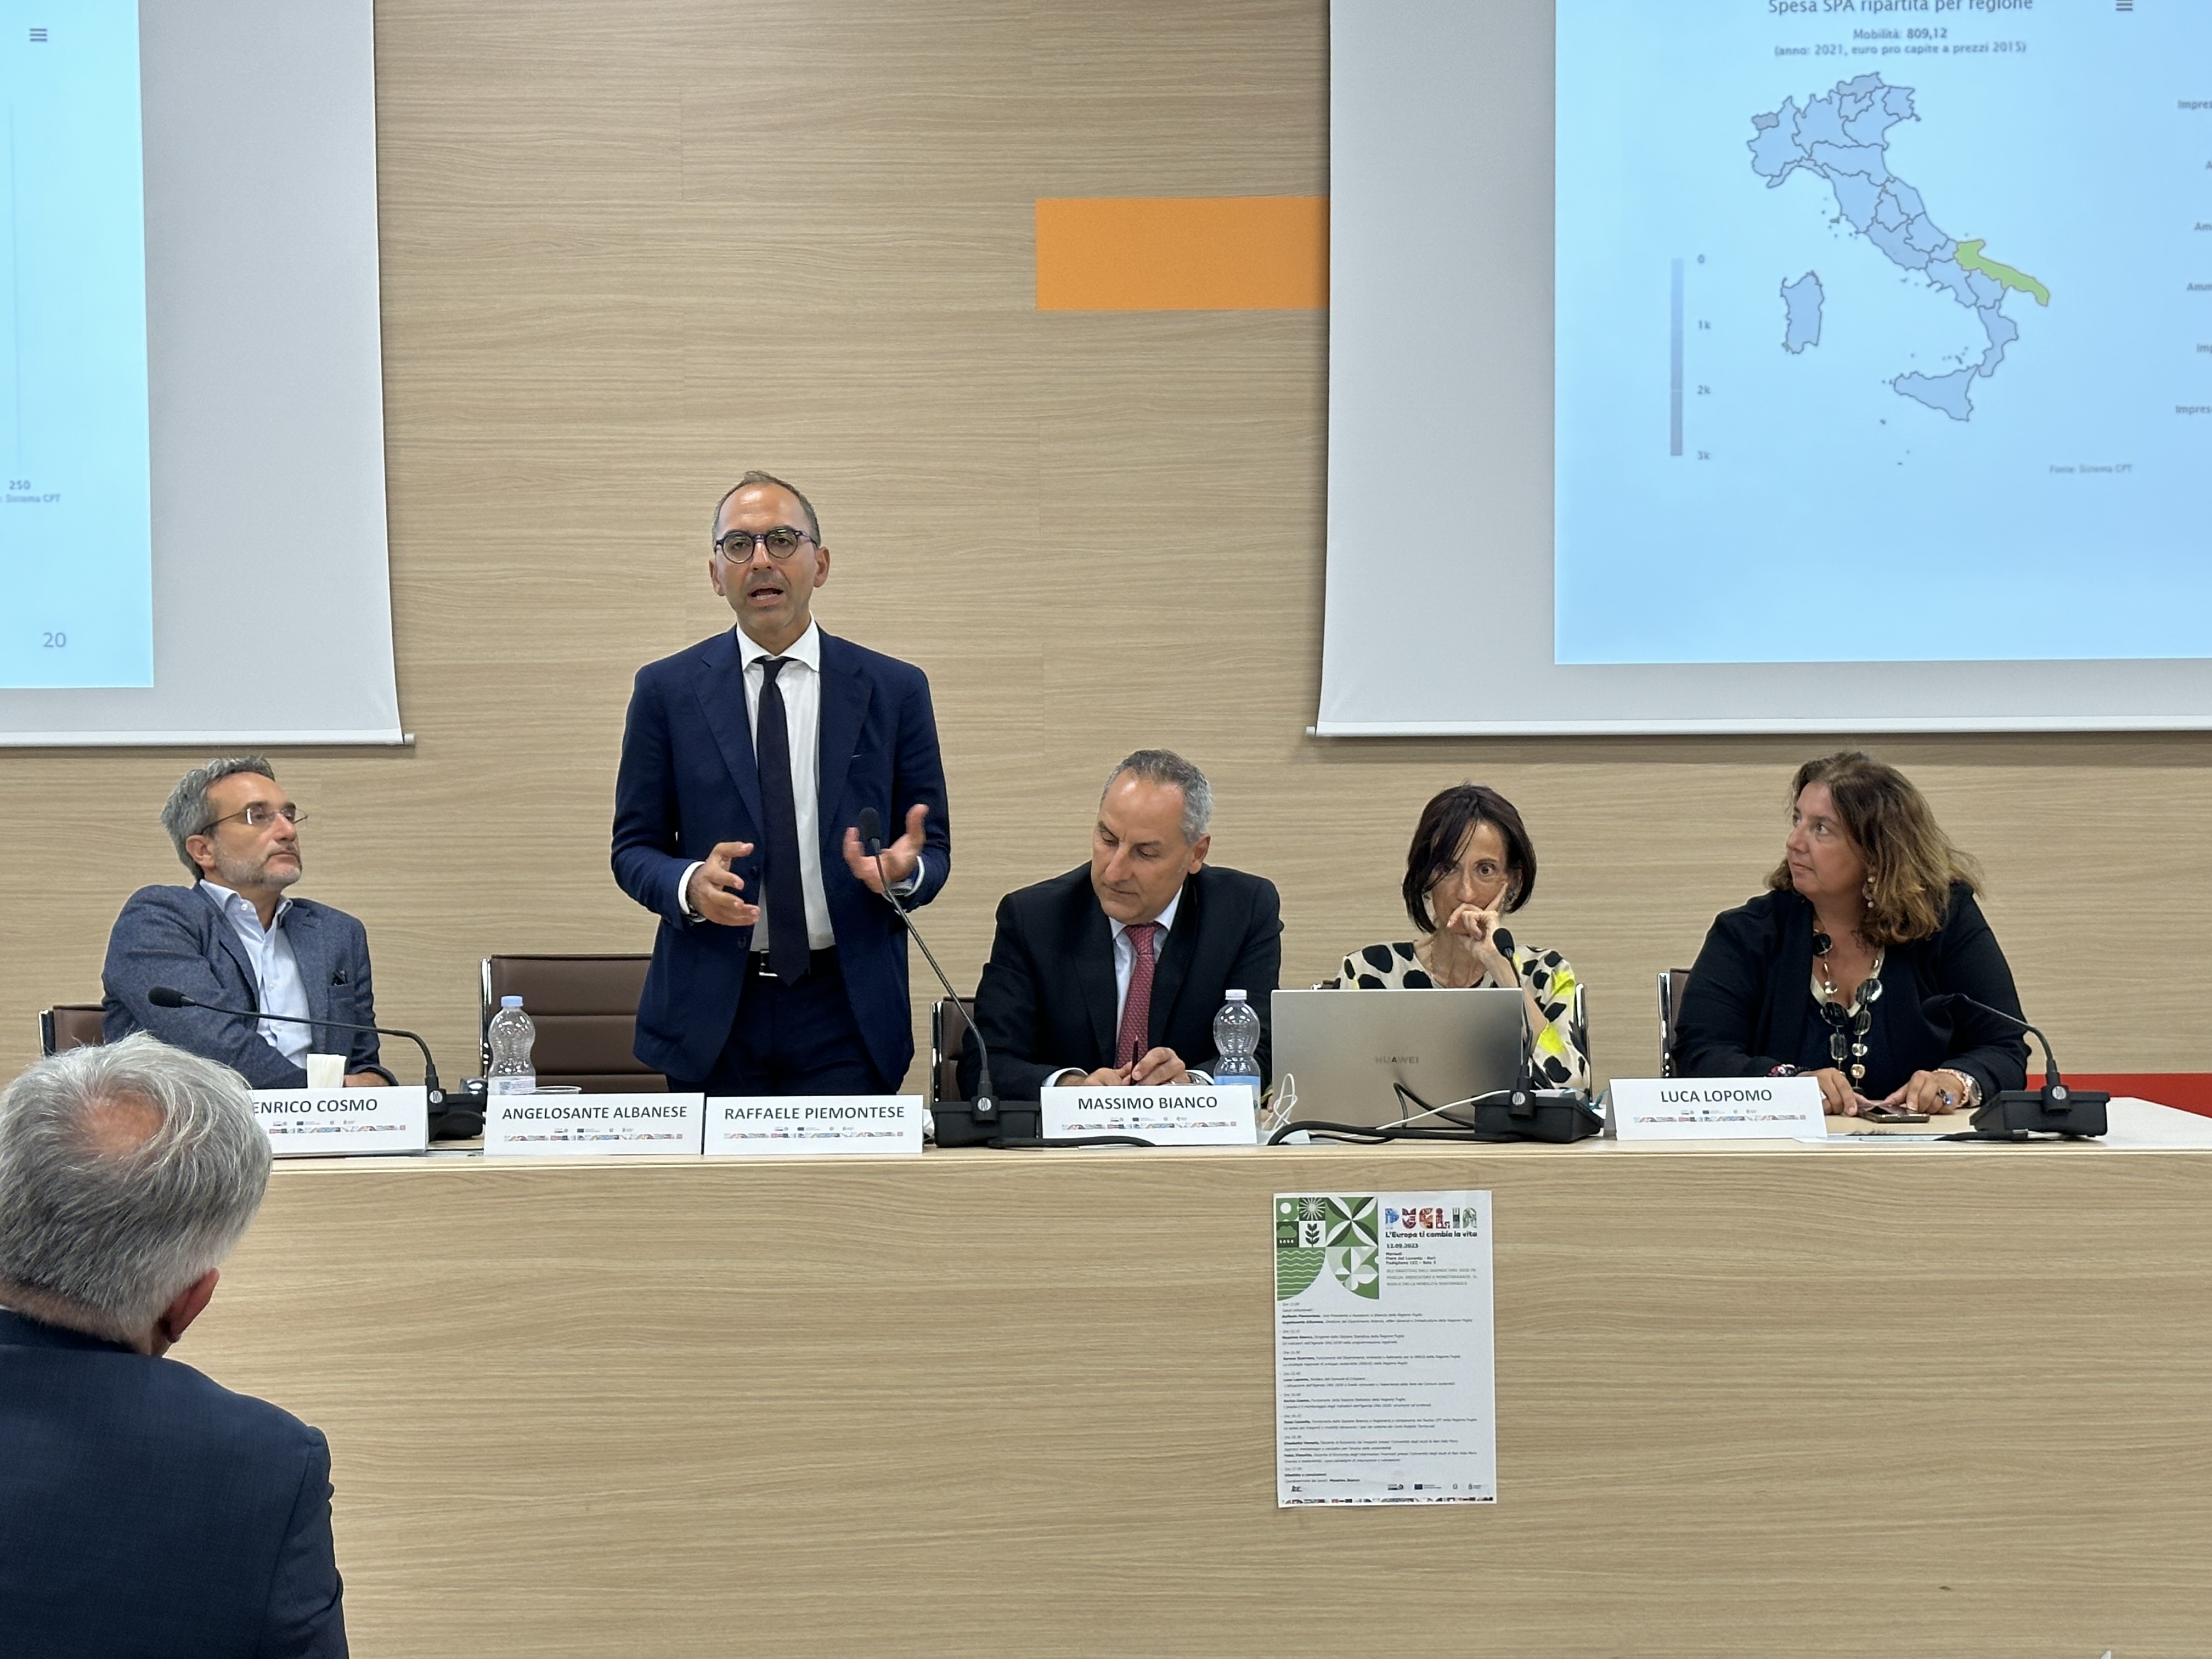 Galleria Piemontese: “I concetti chiave dell’Agenda 2030 applicati dalla Regione Puglia alla mobilità sostenibile” - Diapositiva 2 di 2